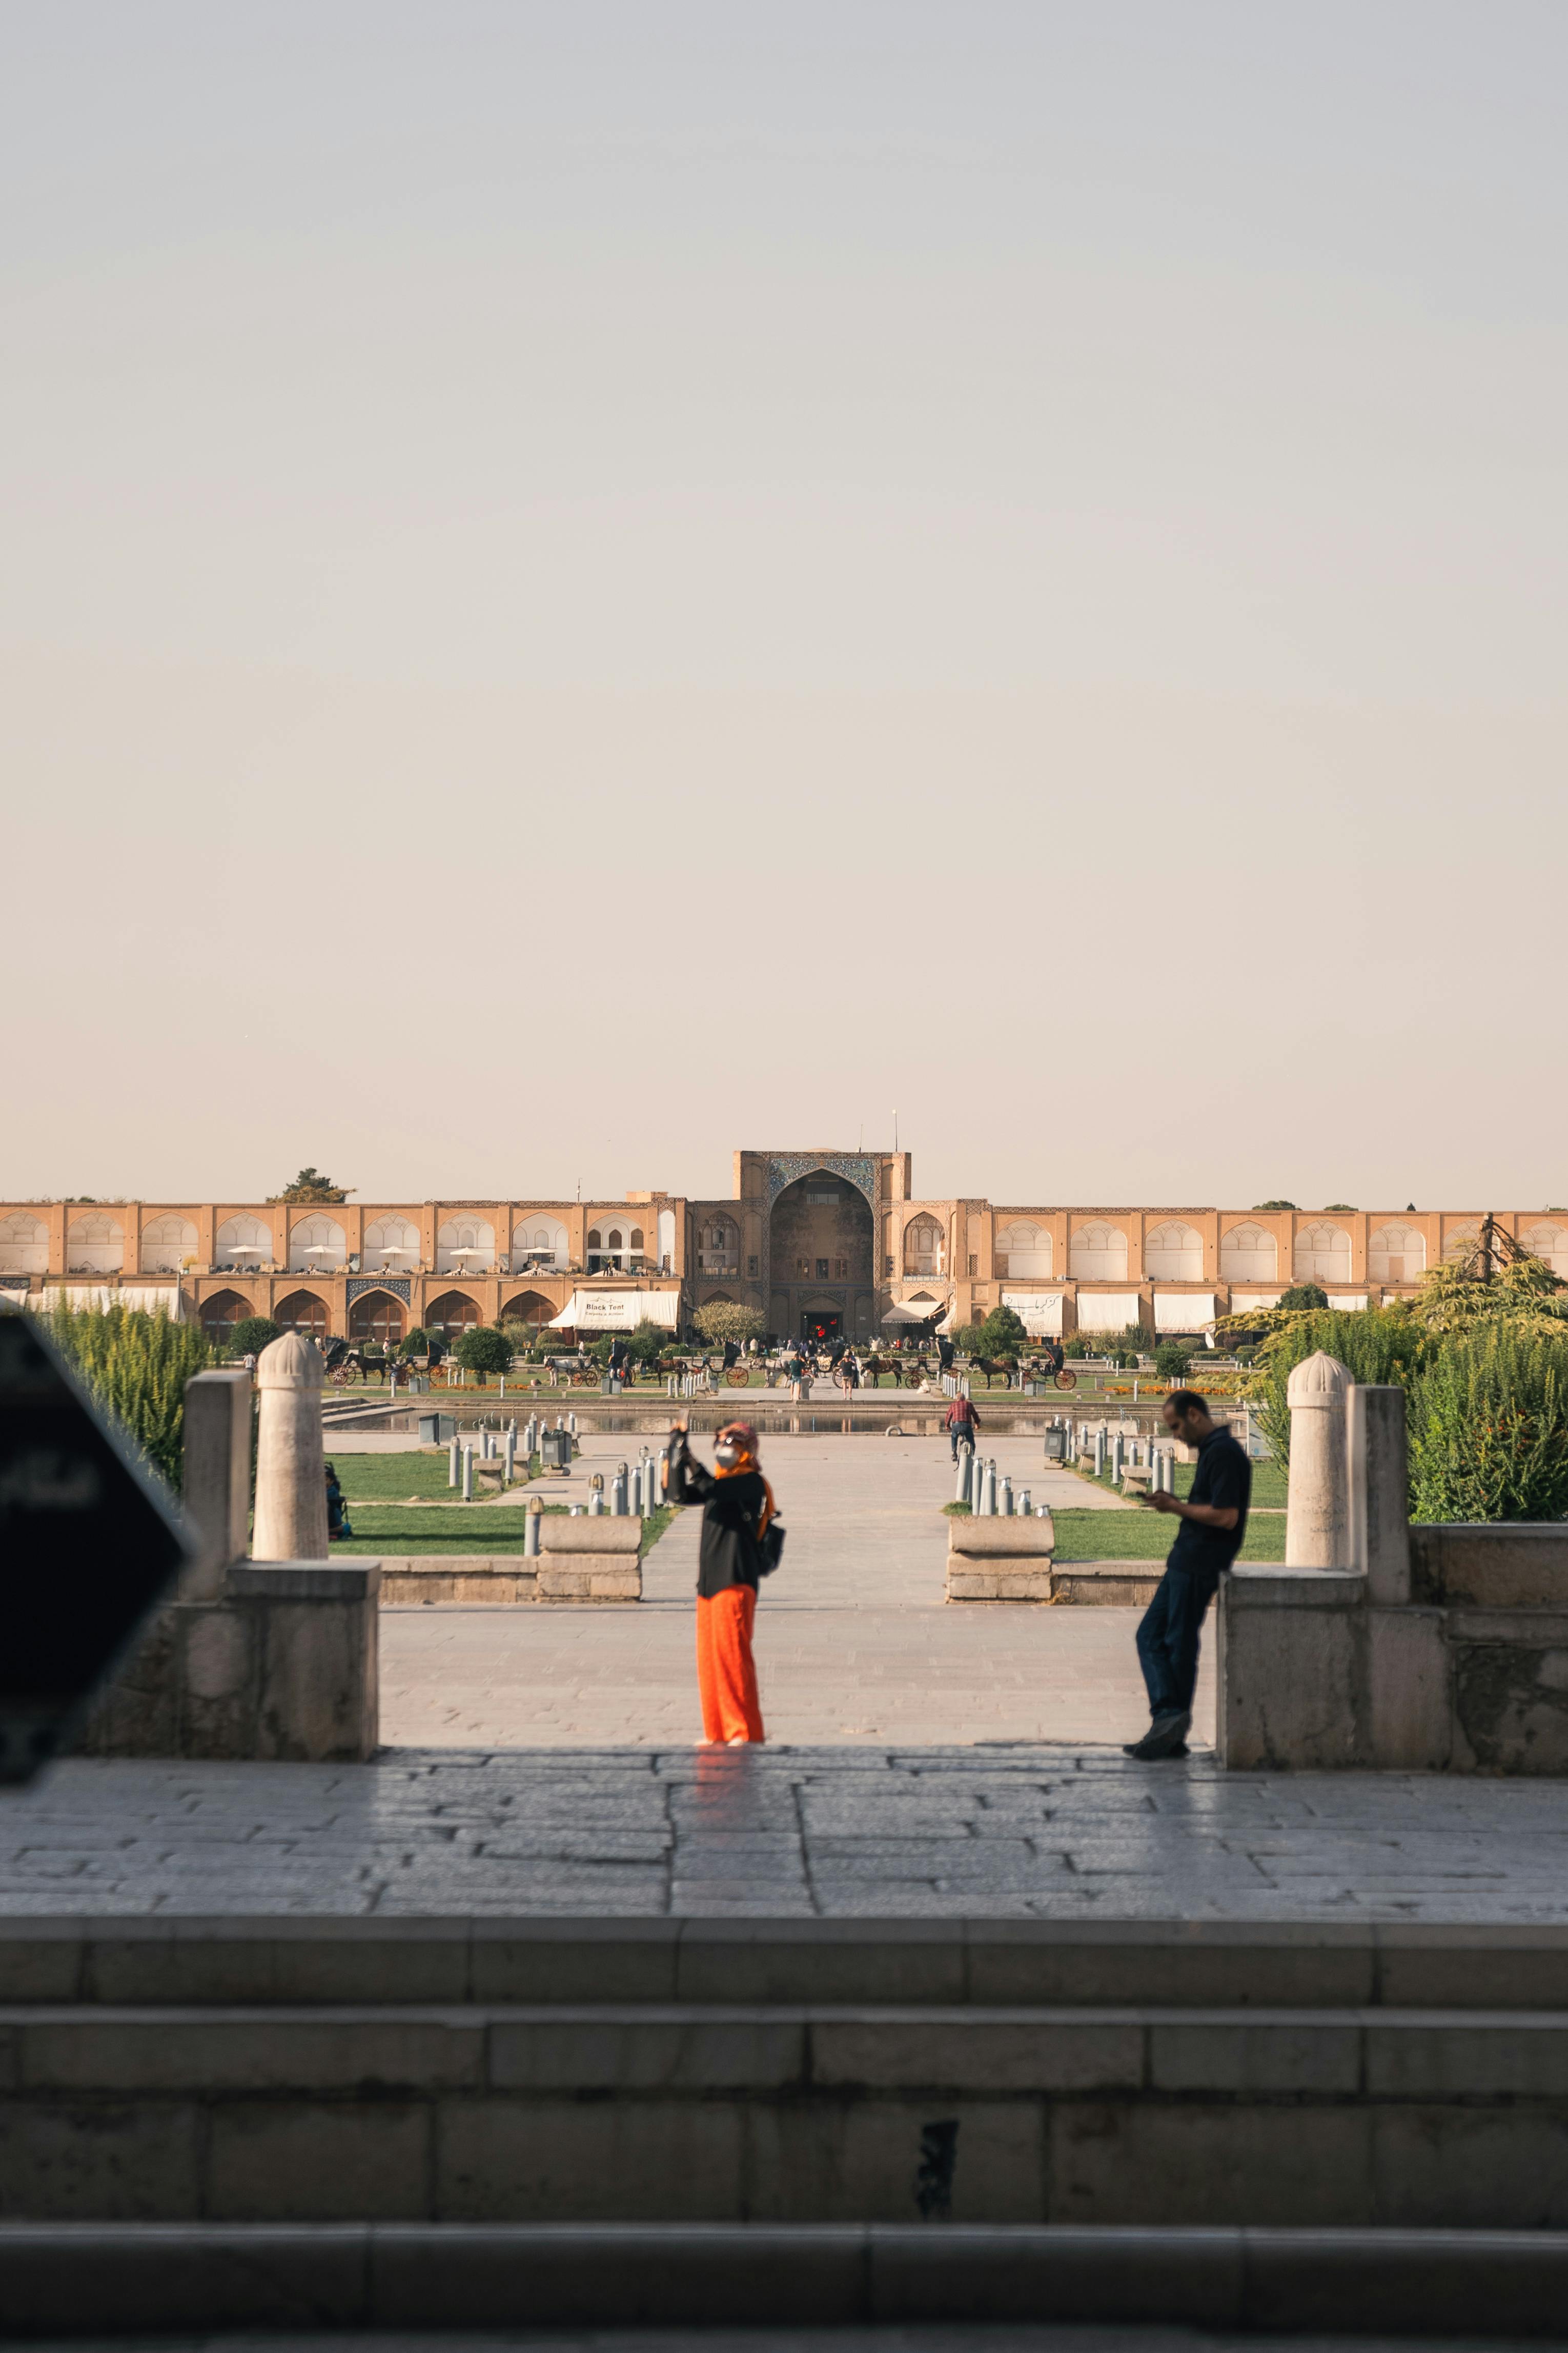 naqsh e jahan square in isfahan in iran